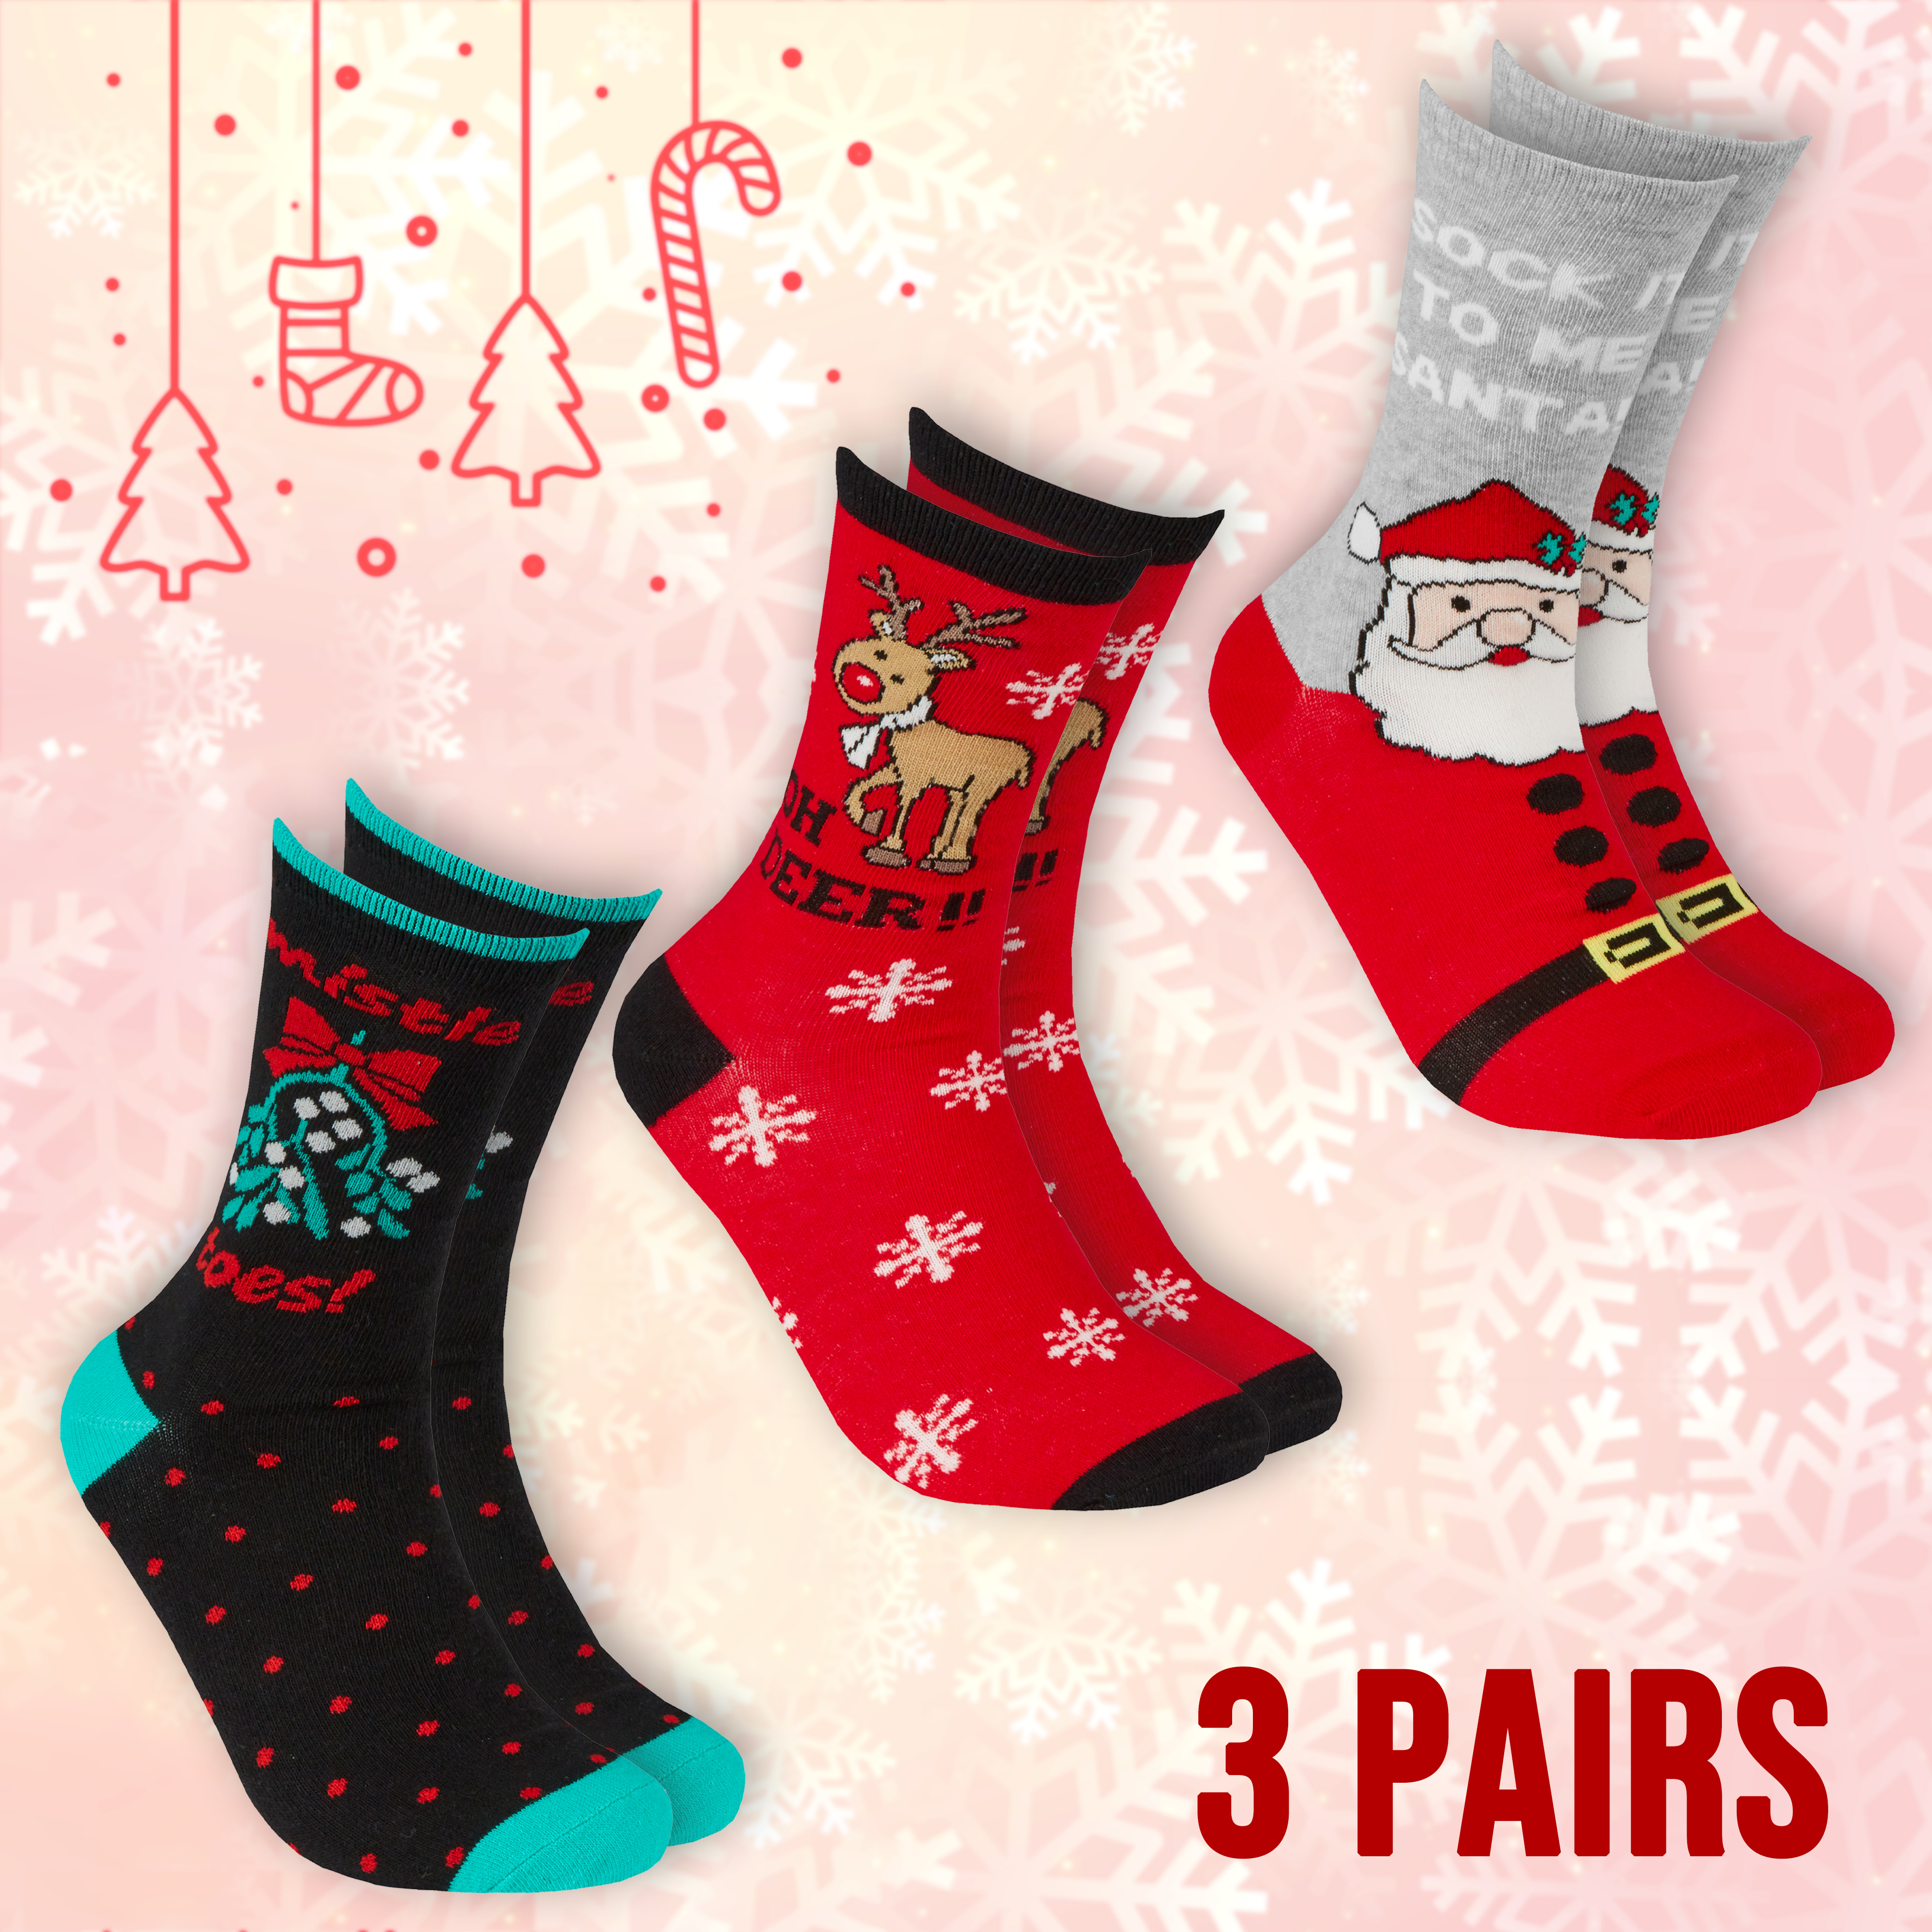 Novelty Christmas Socks 3 Pack Christmas Festive 